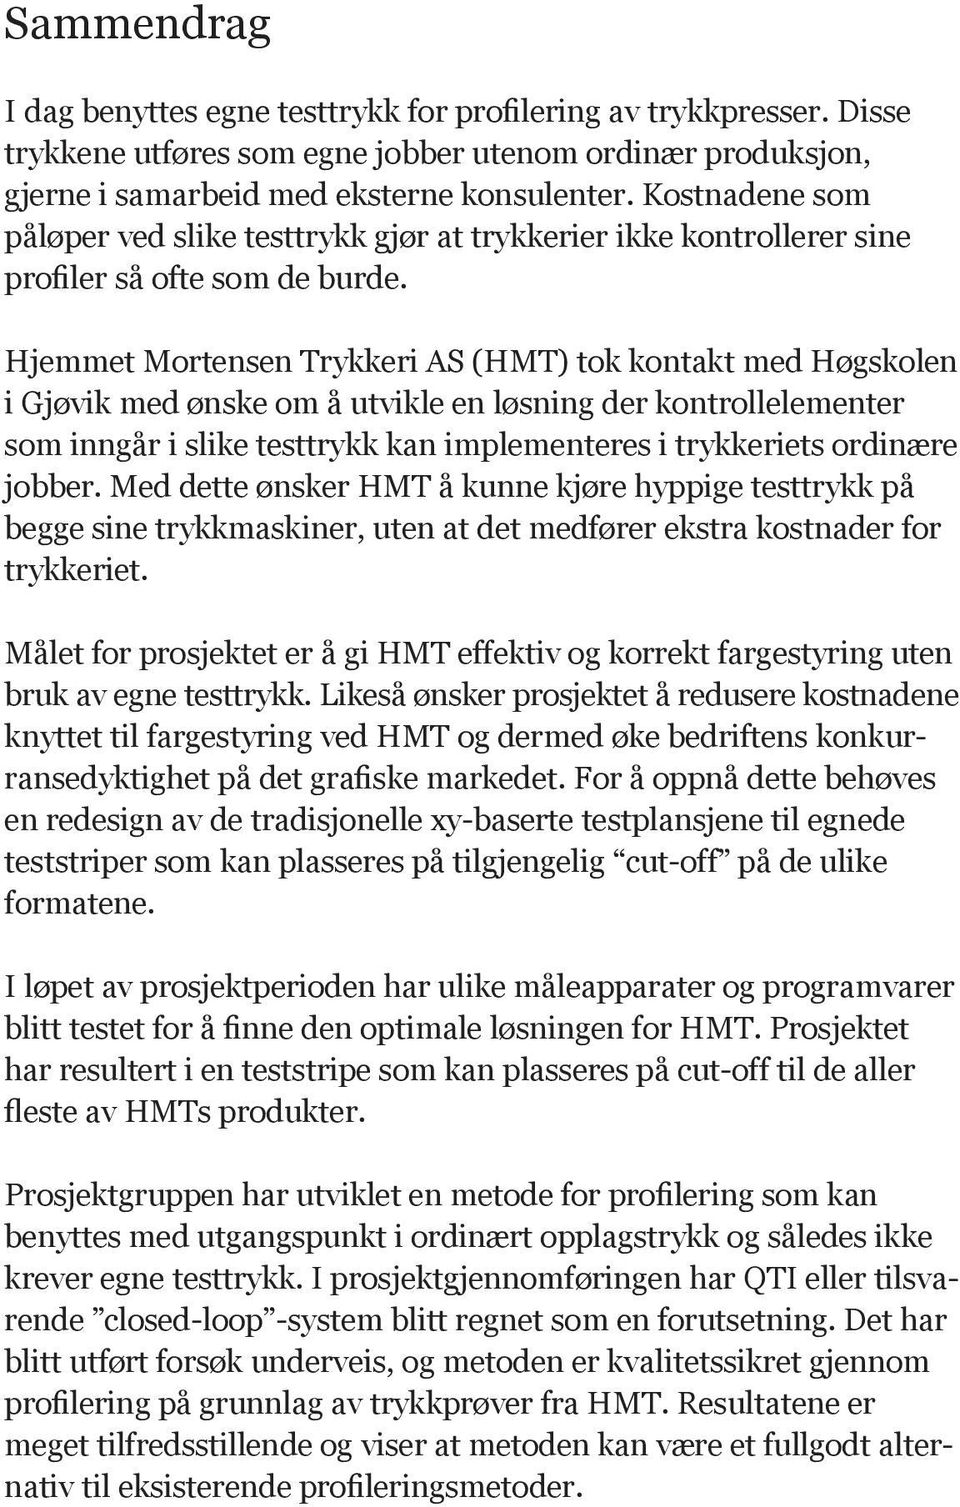 Hjemmet Mortensen Trykkeri AS (HMT) tok kontakt med Høgskolen i Gjøvik med ønske om å utvikle en løsning der kontrollelementer som inngår i slike testtrykk kan implementeres i trykkeriets ordinære